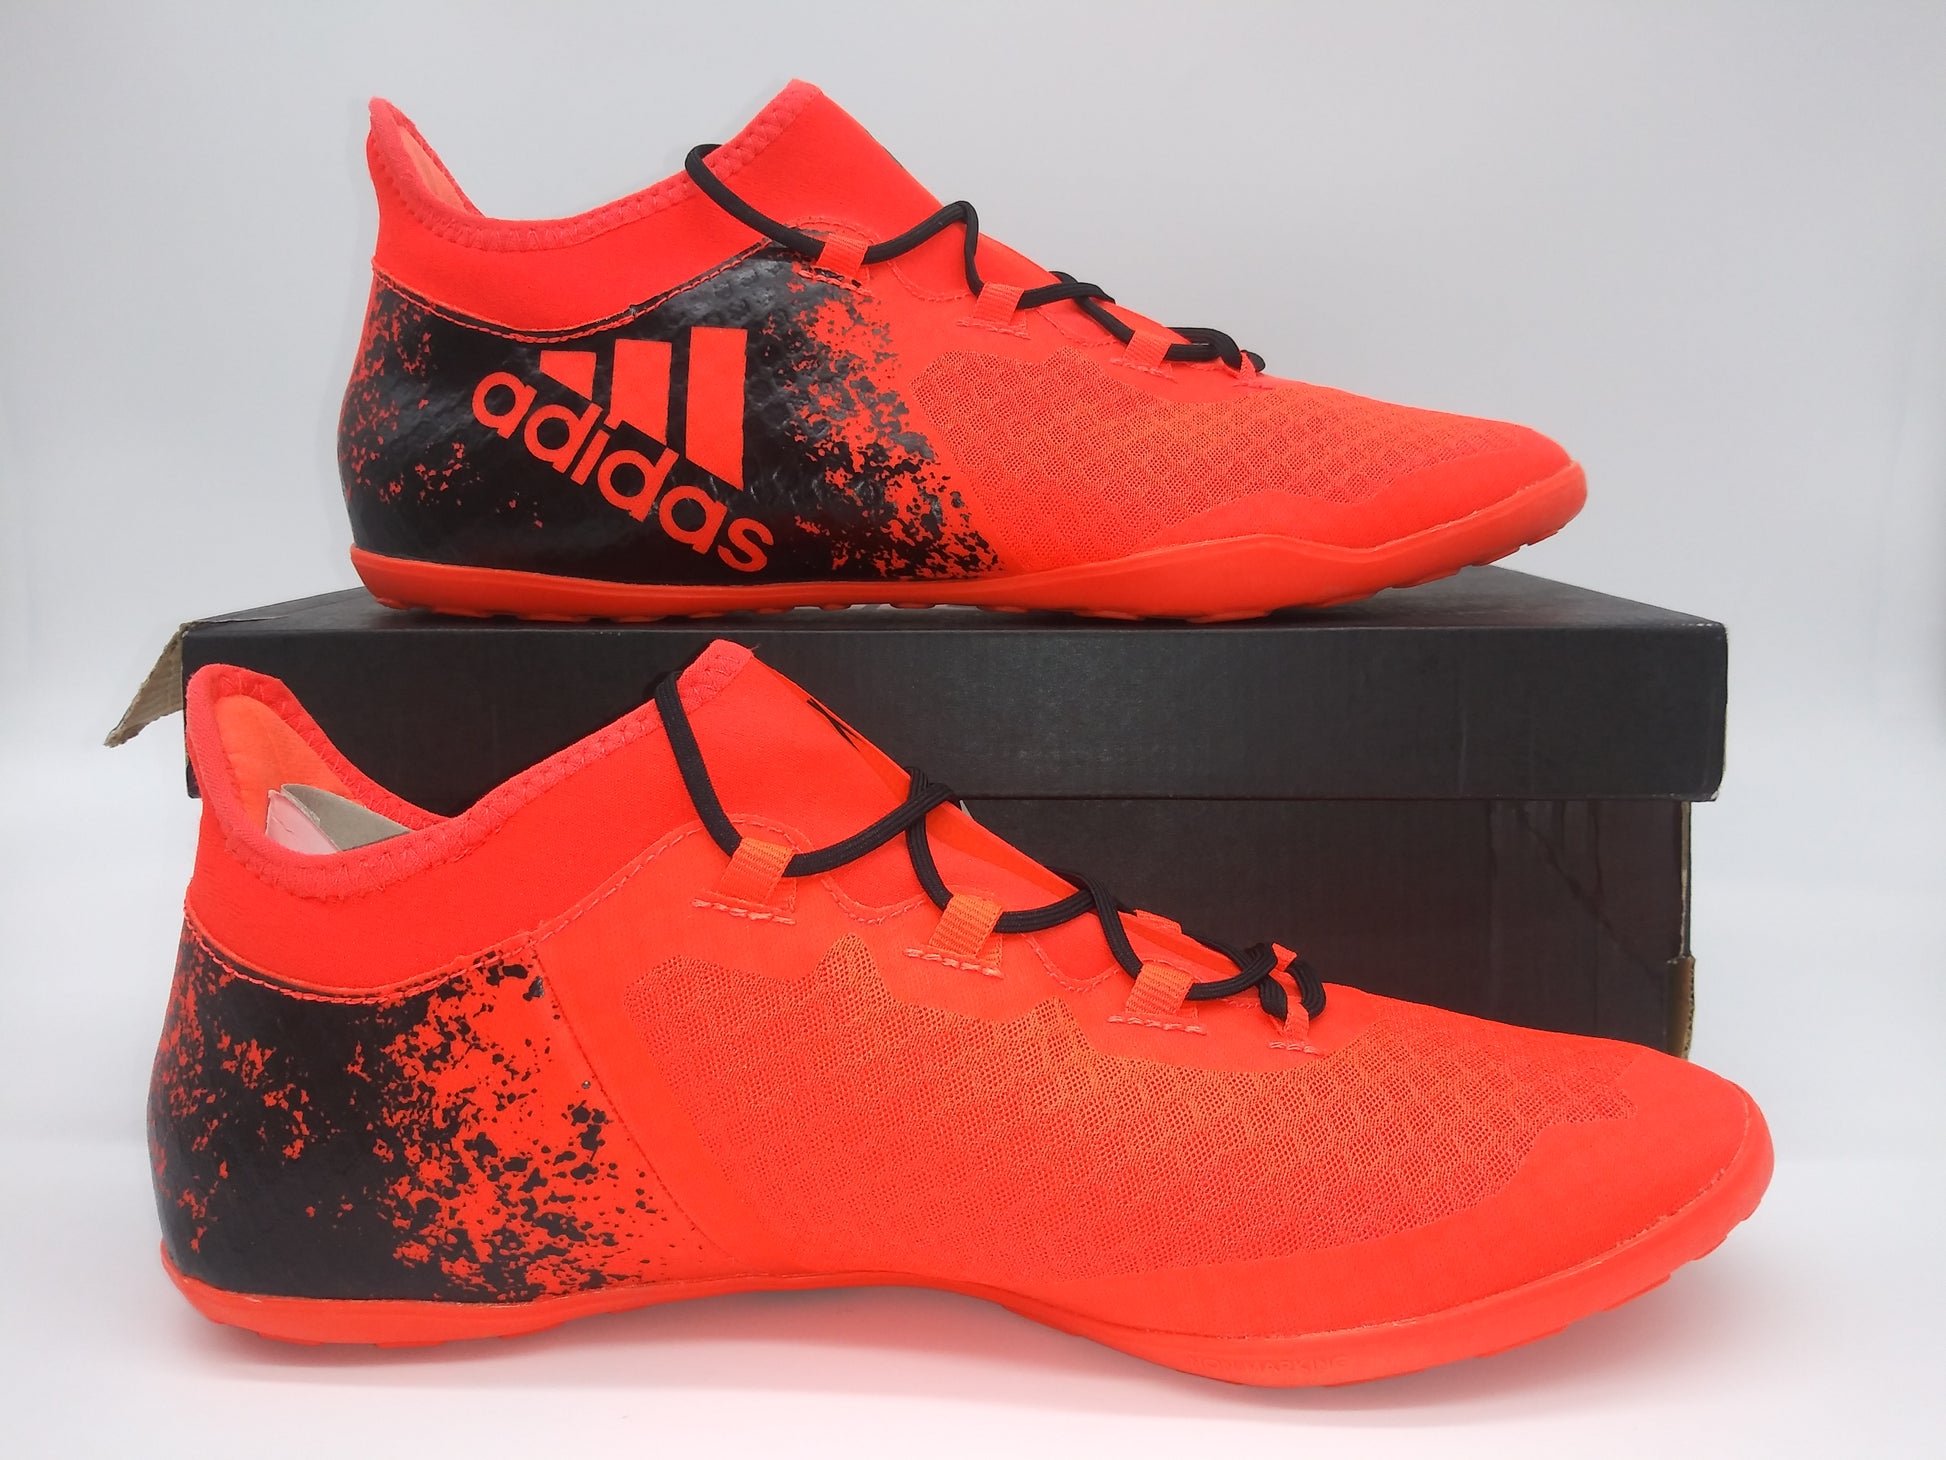 Adidas X 16.2 Court Villegas Footwear